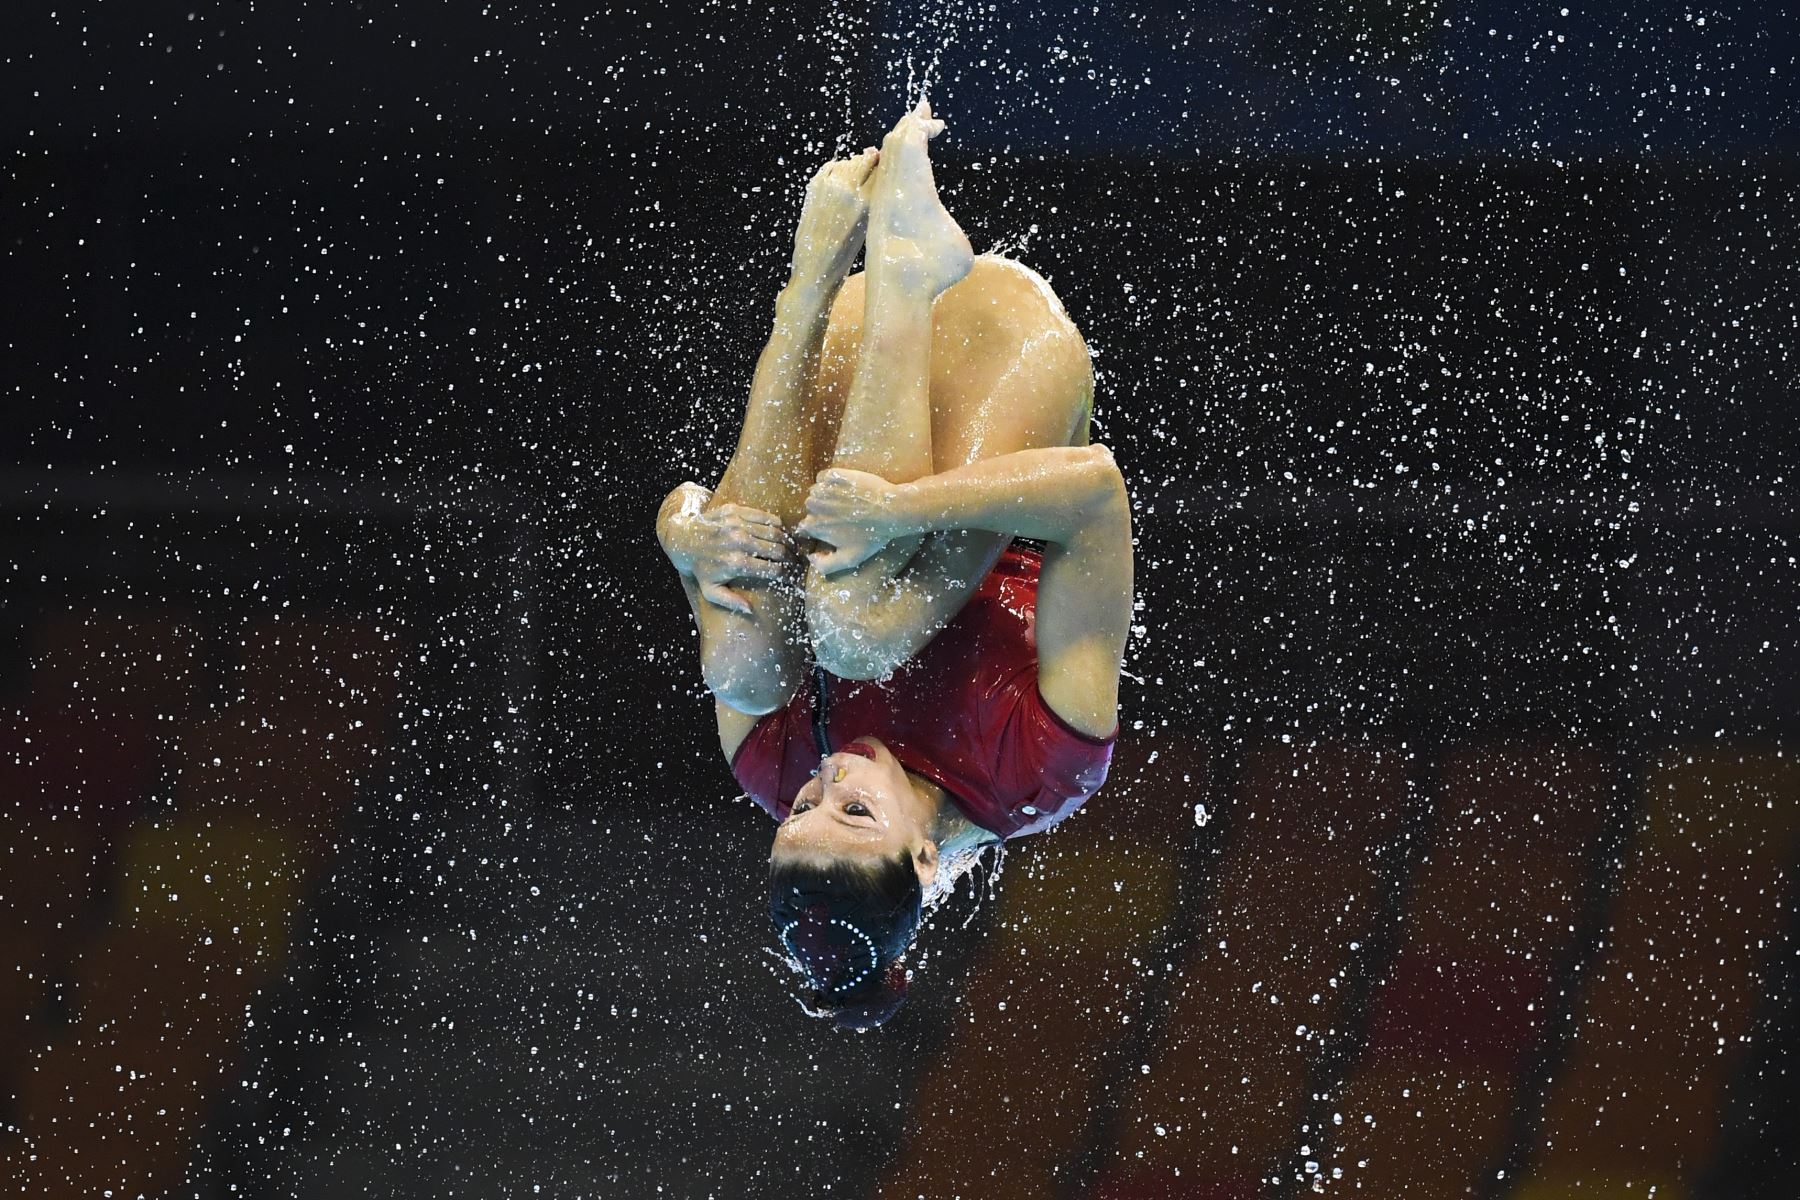 El equipo de España compite en la final de natación artística de rutina en el Campeonato Mundial 2019. Foto: AFP